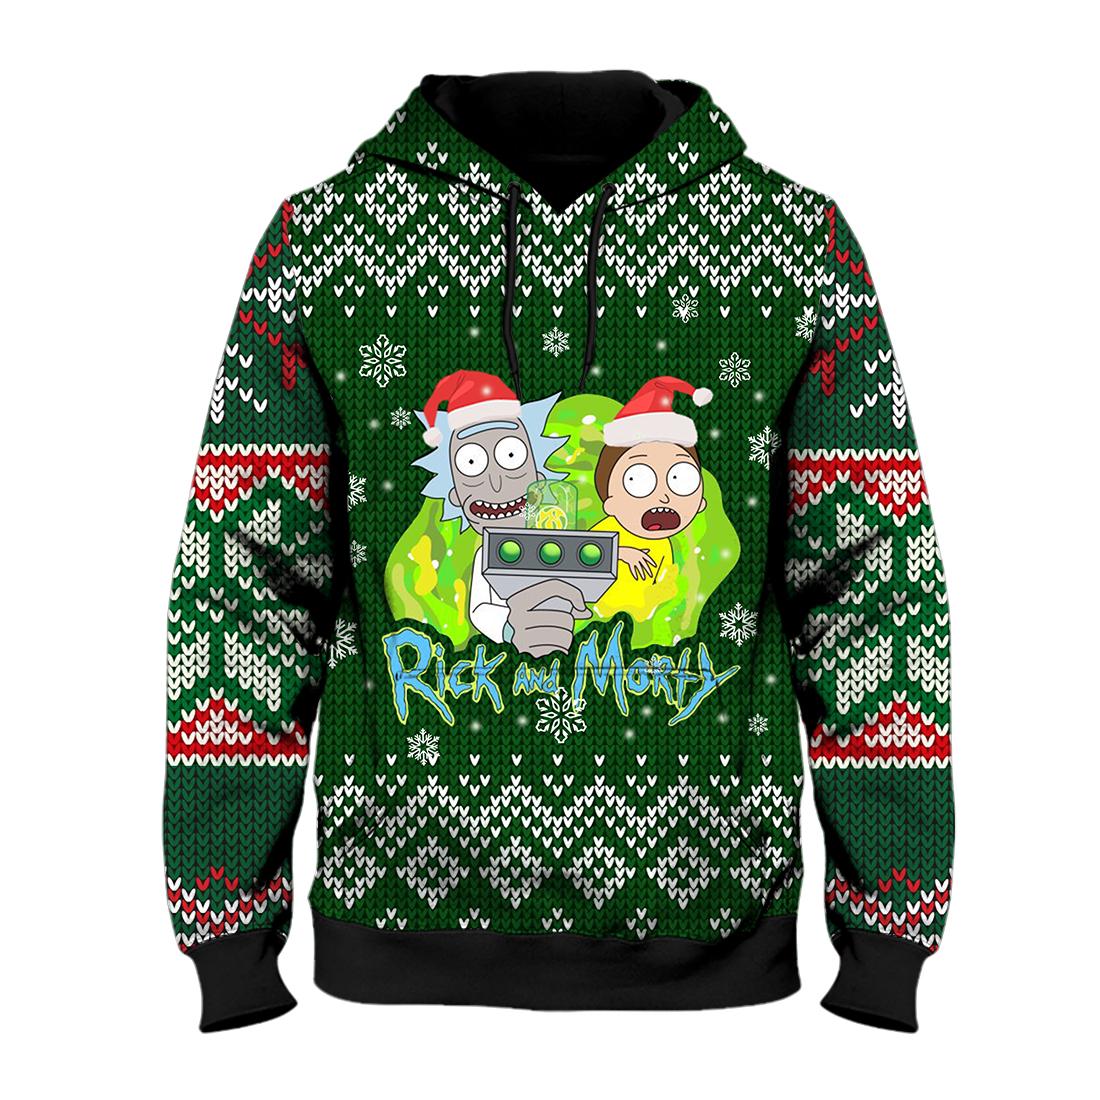 Rick and morty ugly christmas all over print hoodie – maria